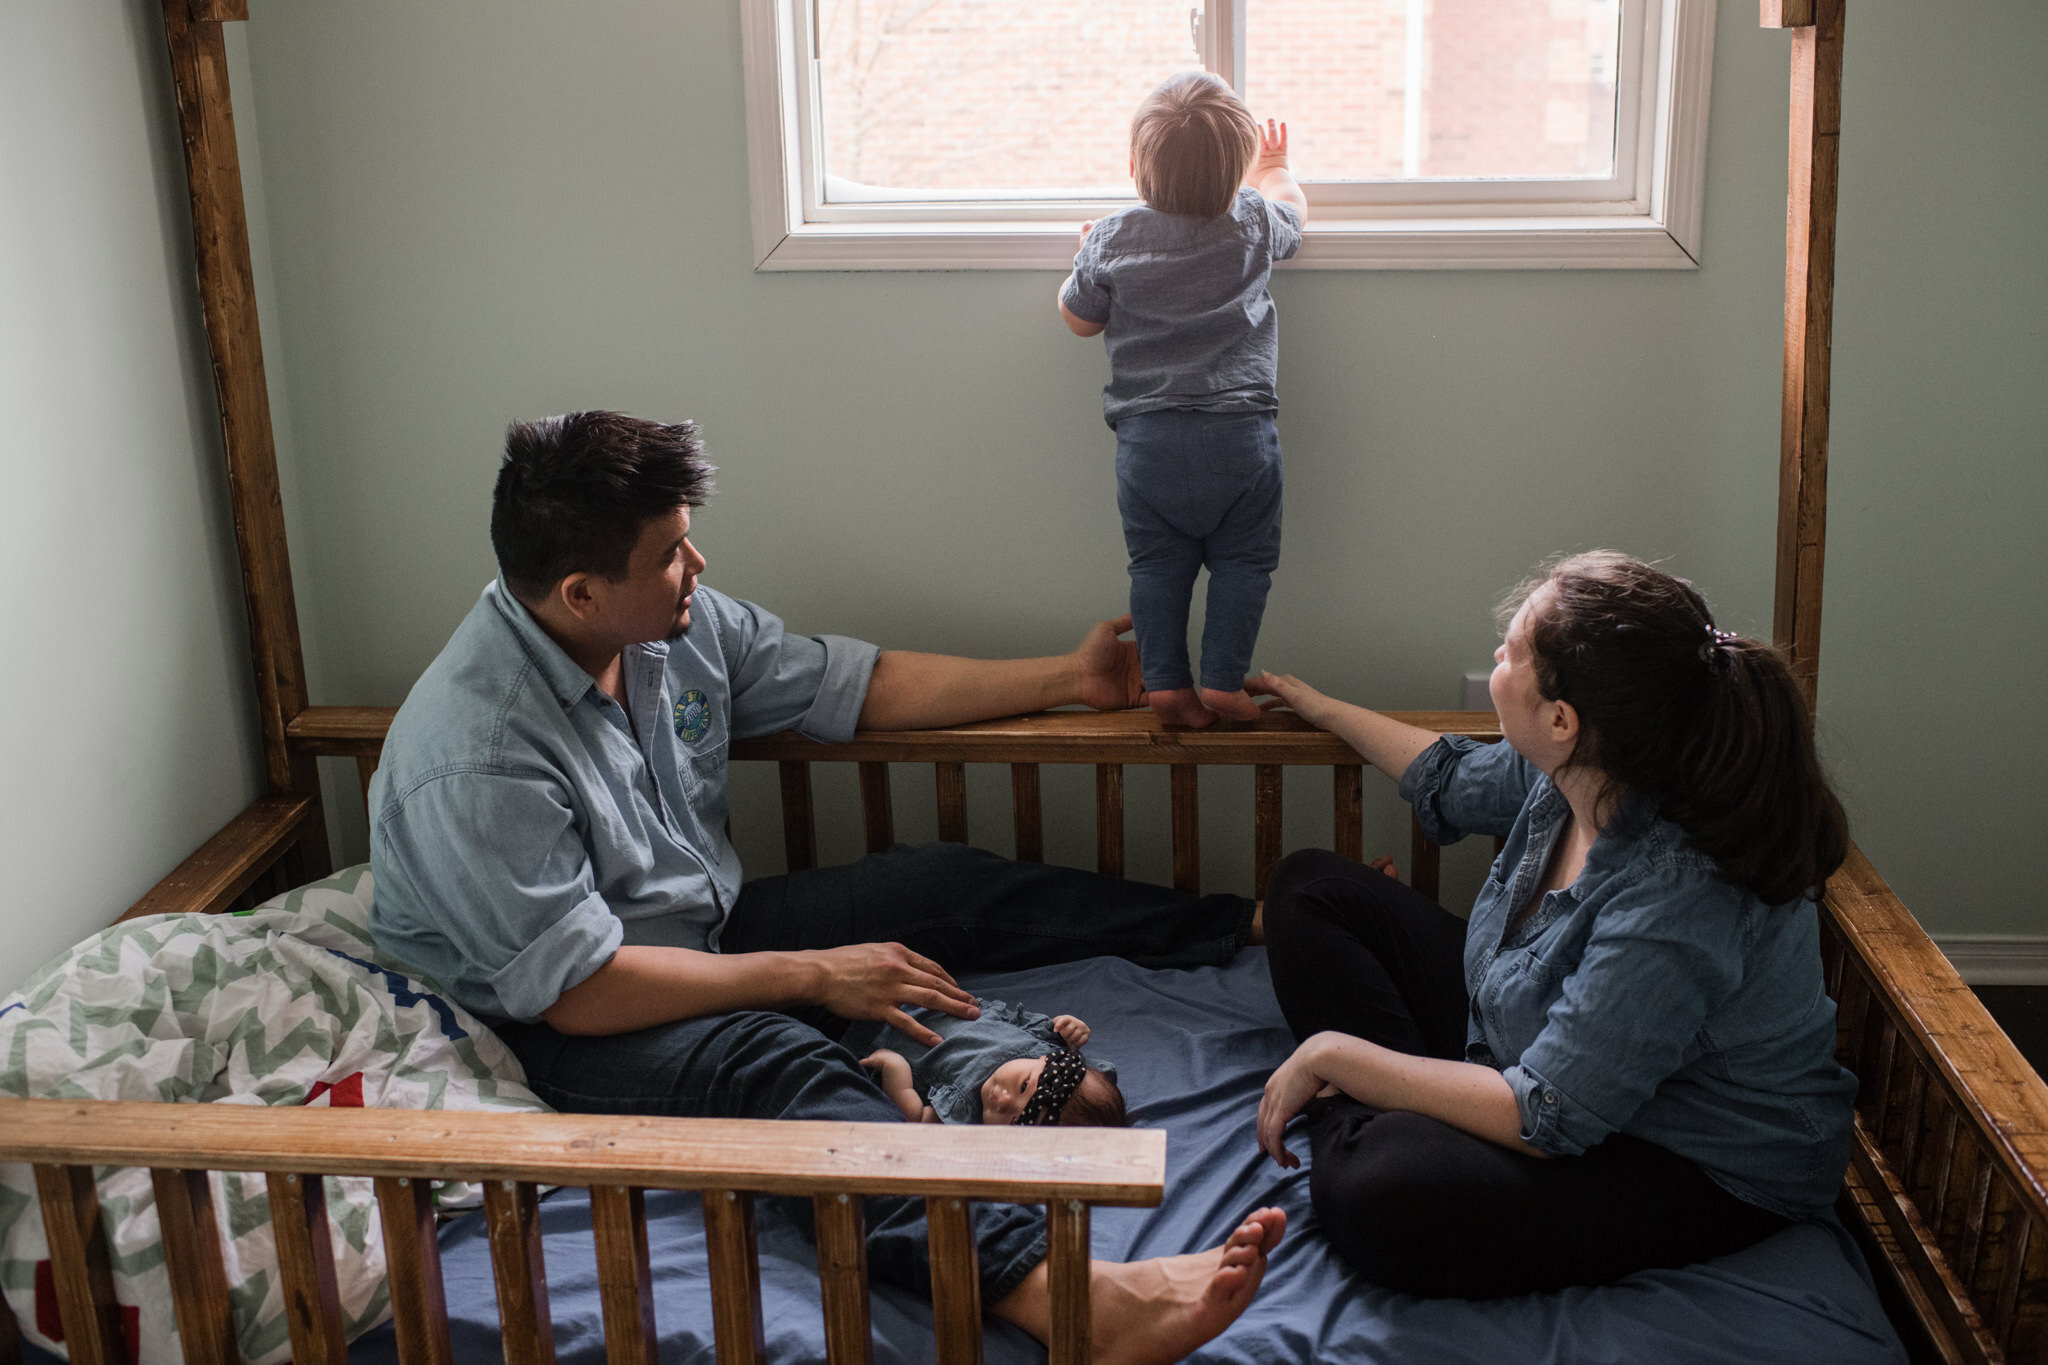 963-newborn-family-photoshoot-documentary-at-home-indoors-toronto-markham-photographer.jpg